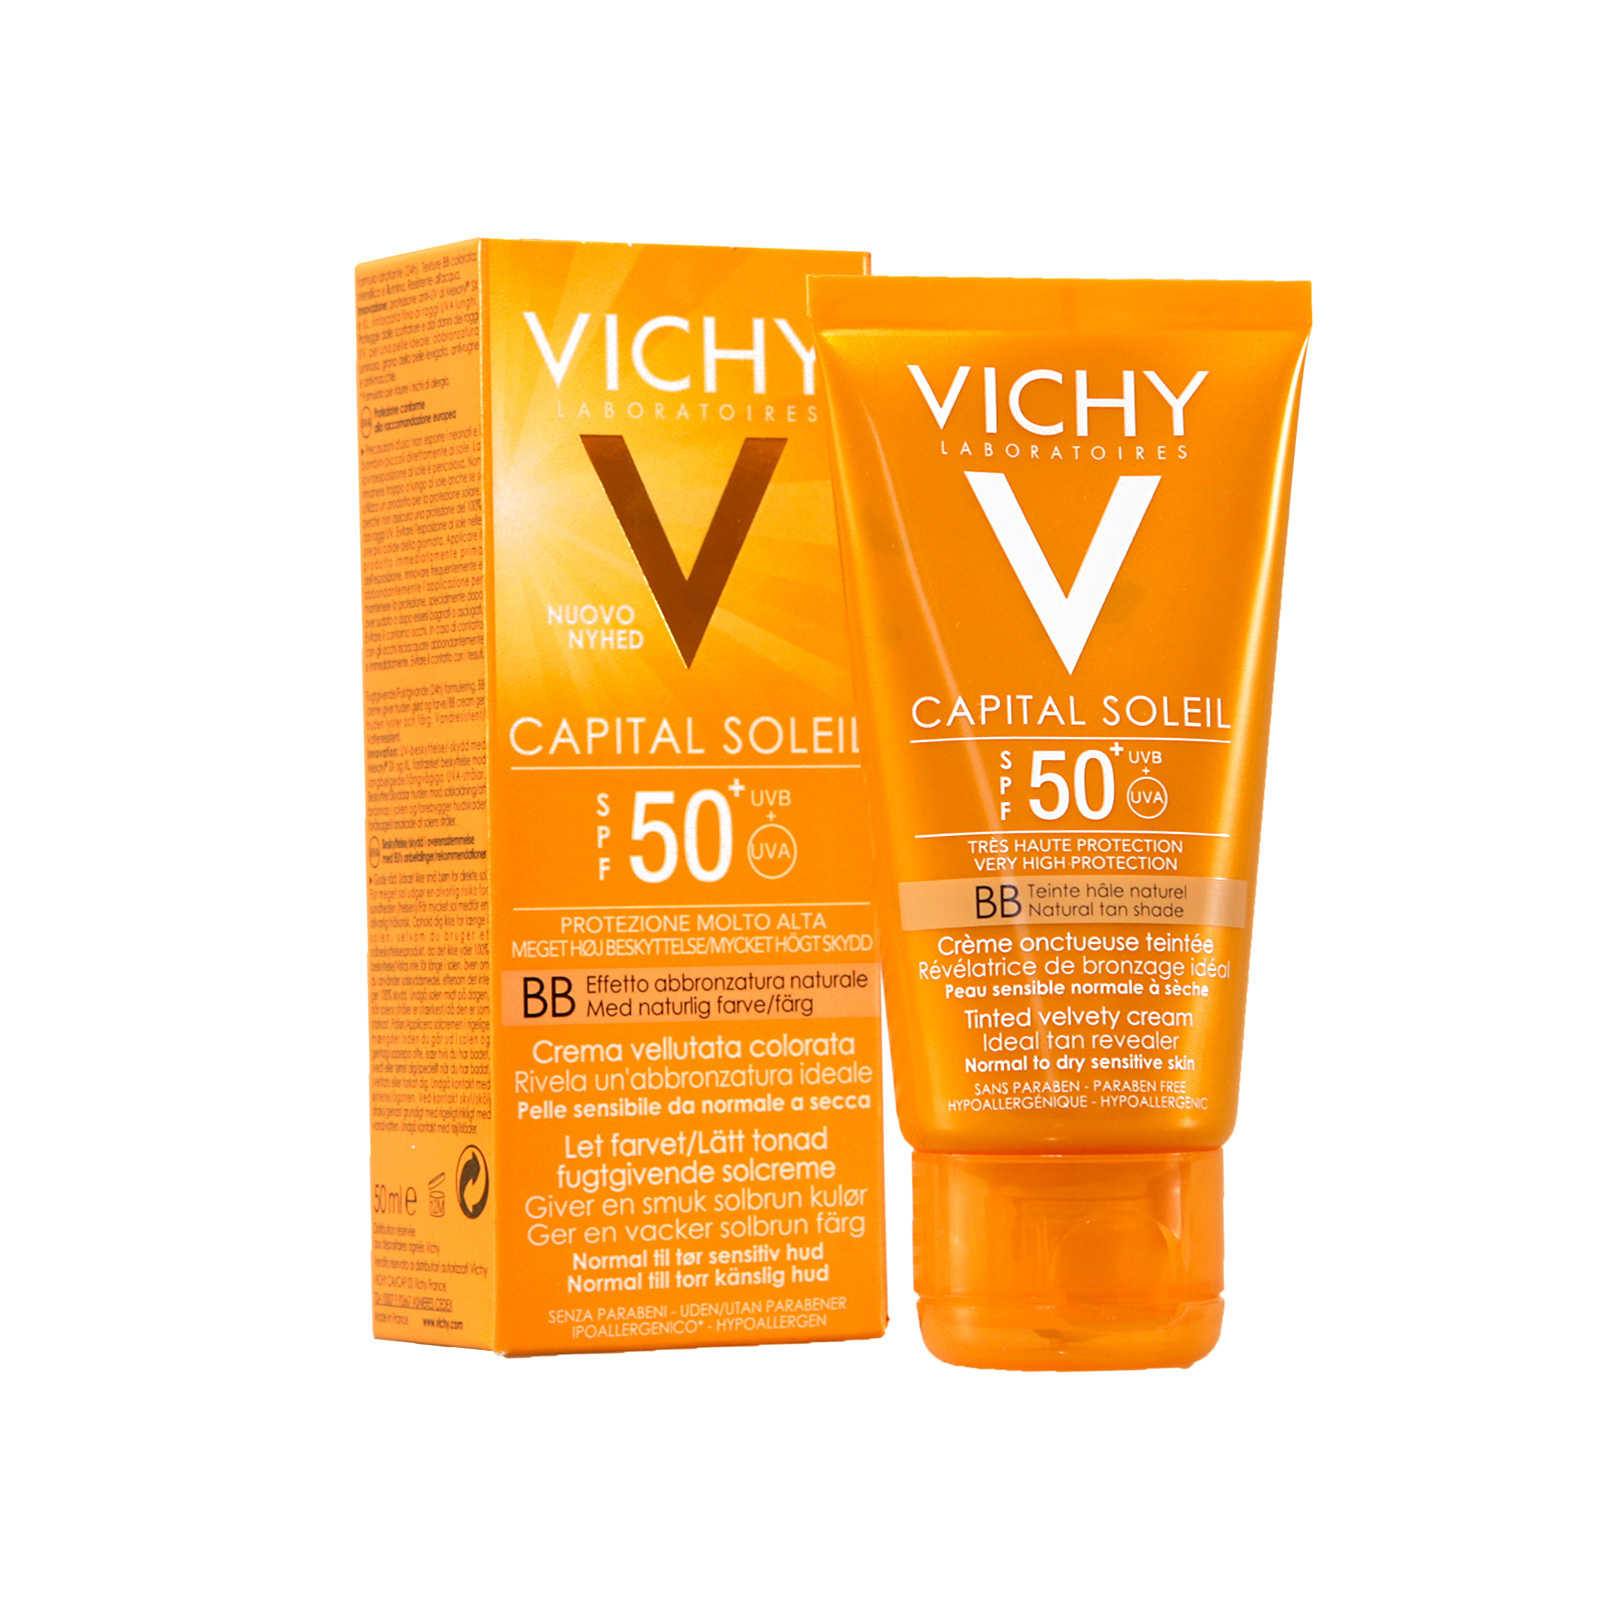 Vichy capital ideal soleil spf 50